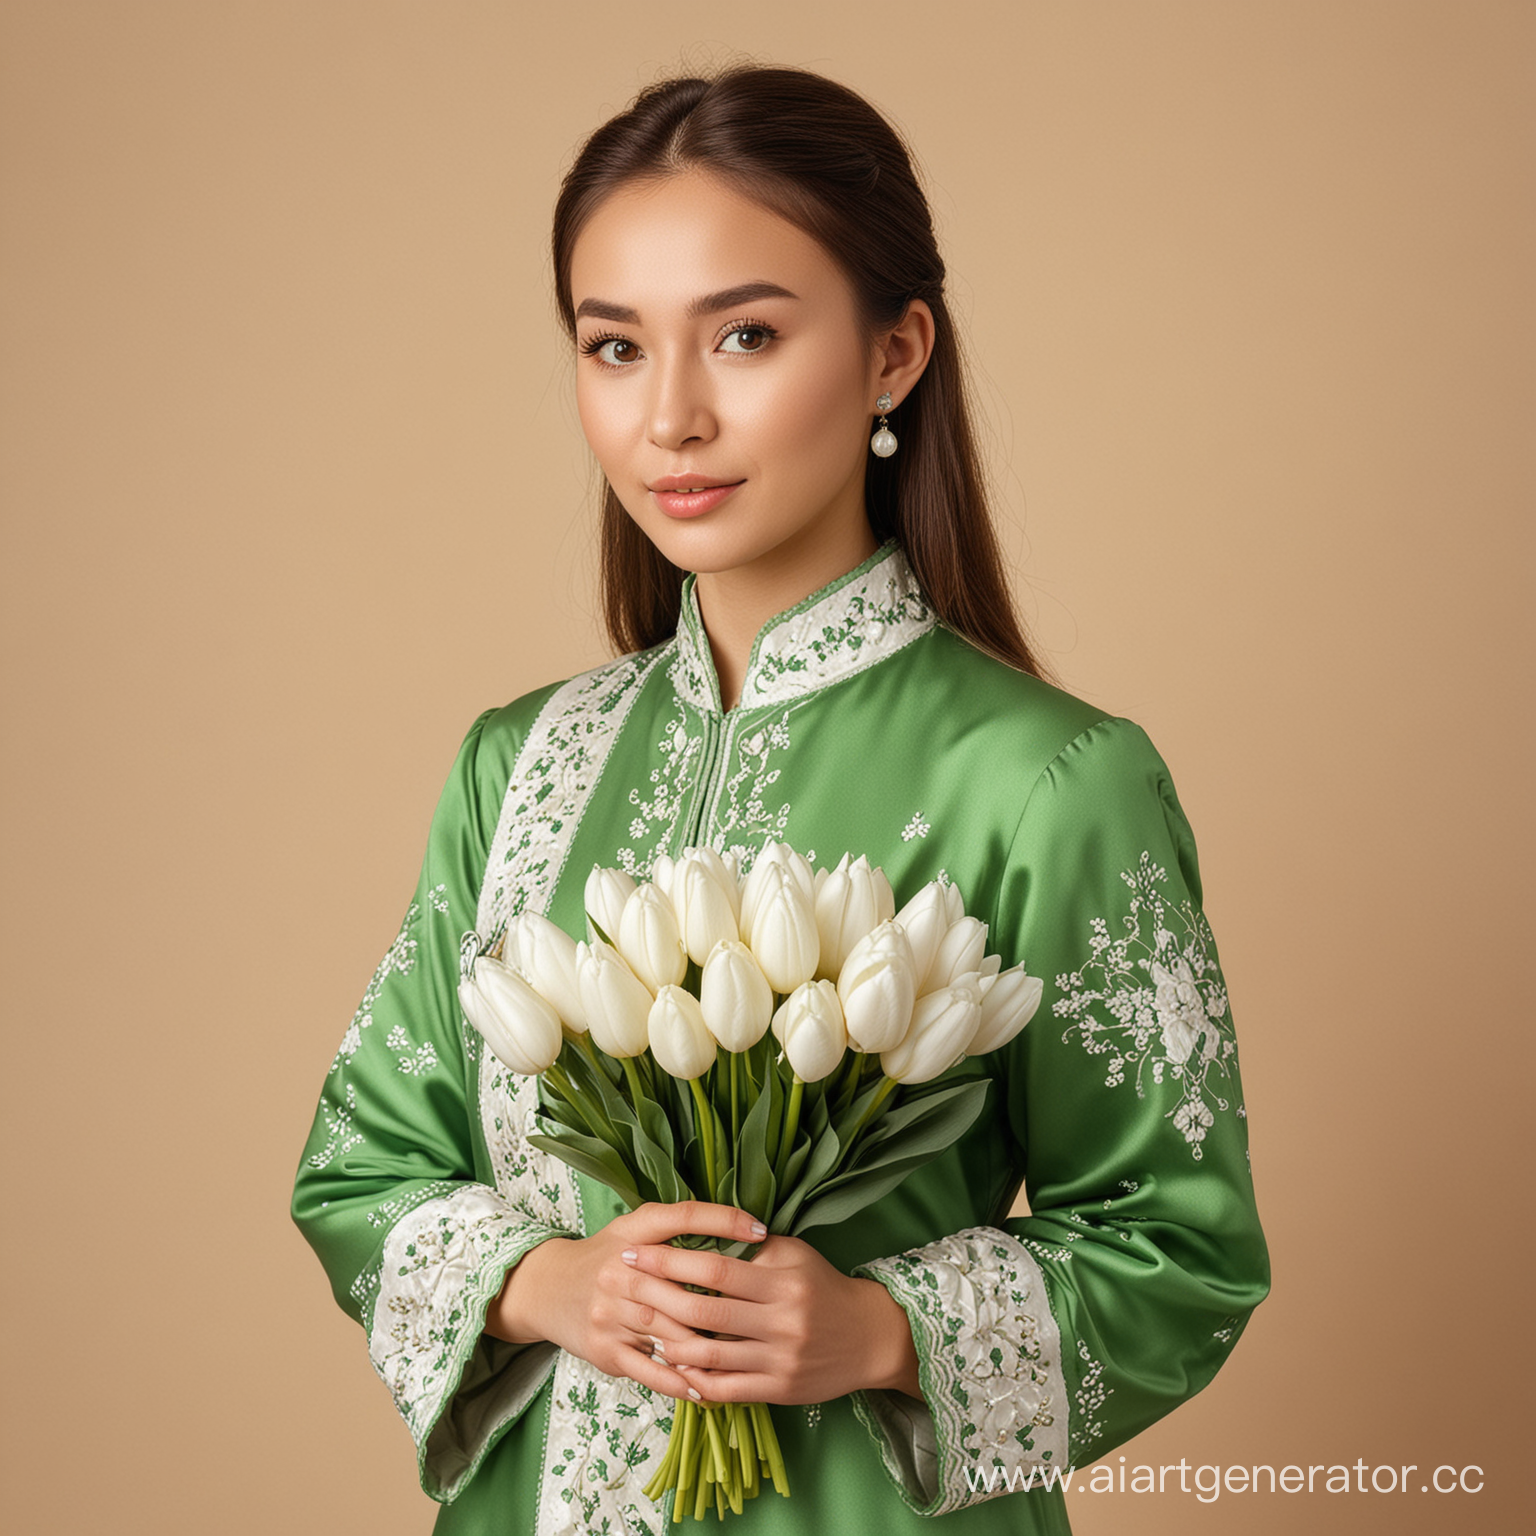 девушка казашка в национальной одежде зеленого цвета, на бежевом фоне,  в руках держит букет белых тюльпанов